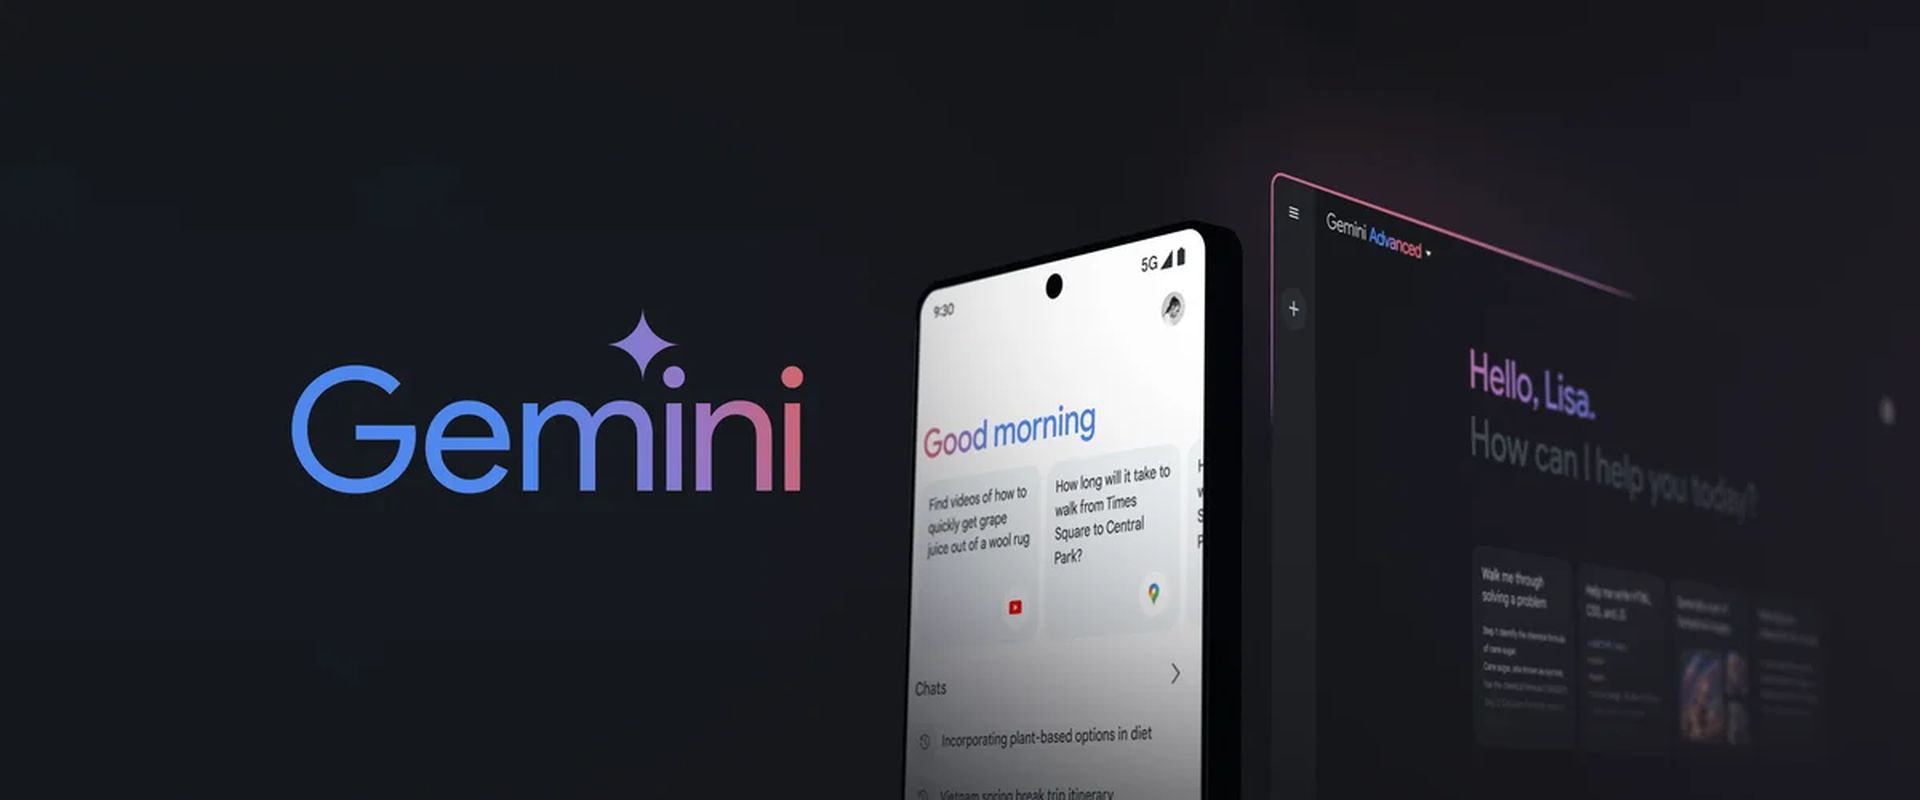 Google wprowadza na Androida funkcję Gemini dostępną wyłącznie na iOS